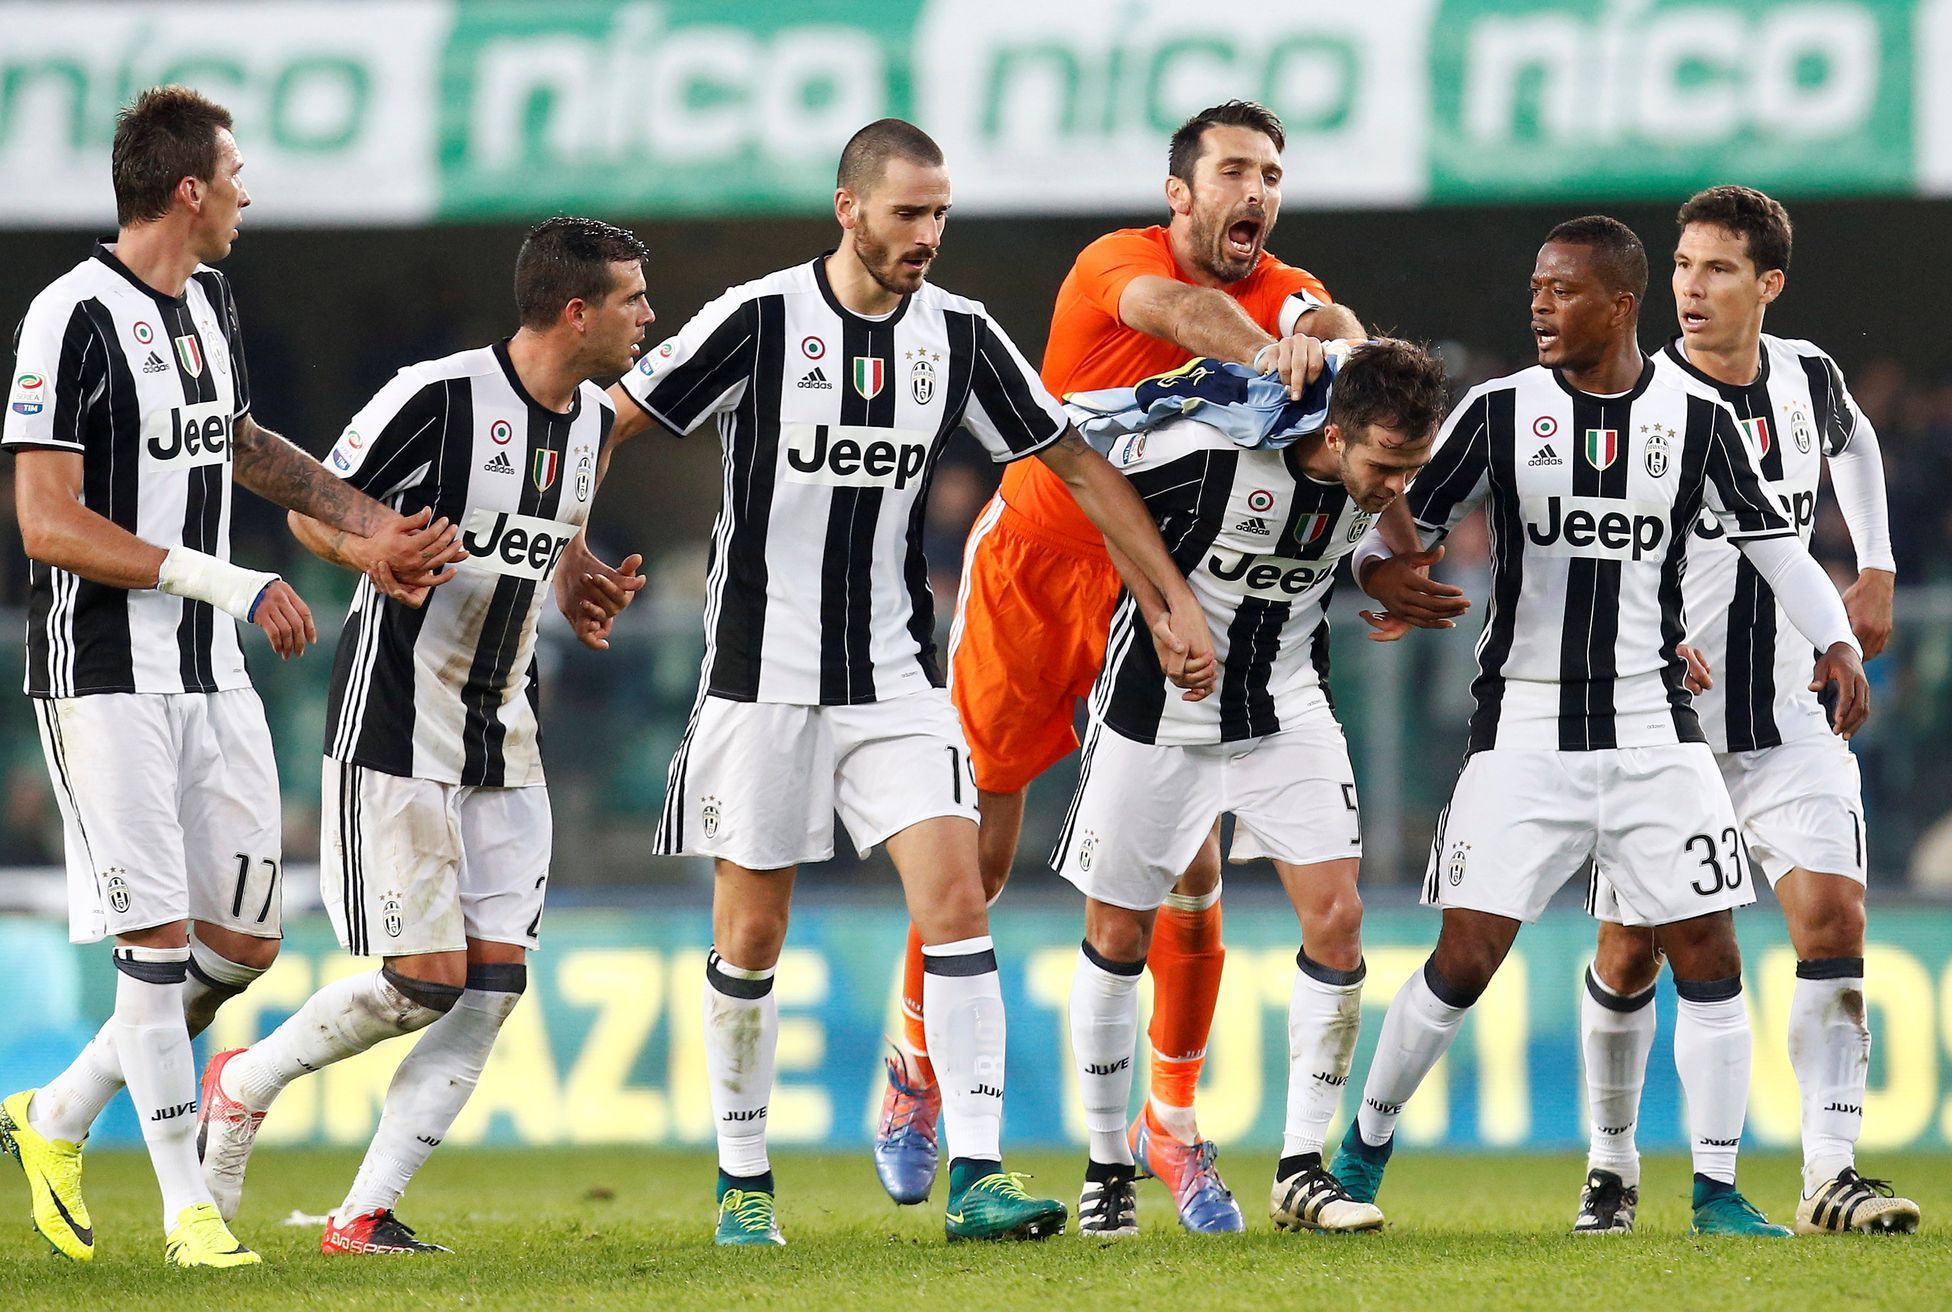 Fotbalisté Juventusu slaví vítězství nad Chievem Verona